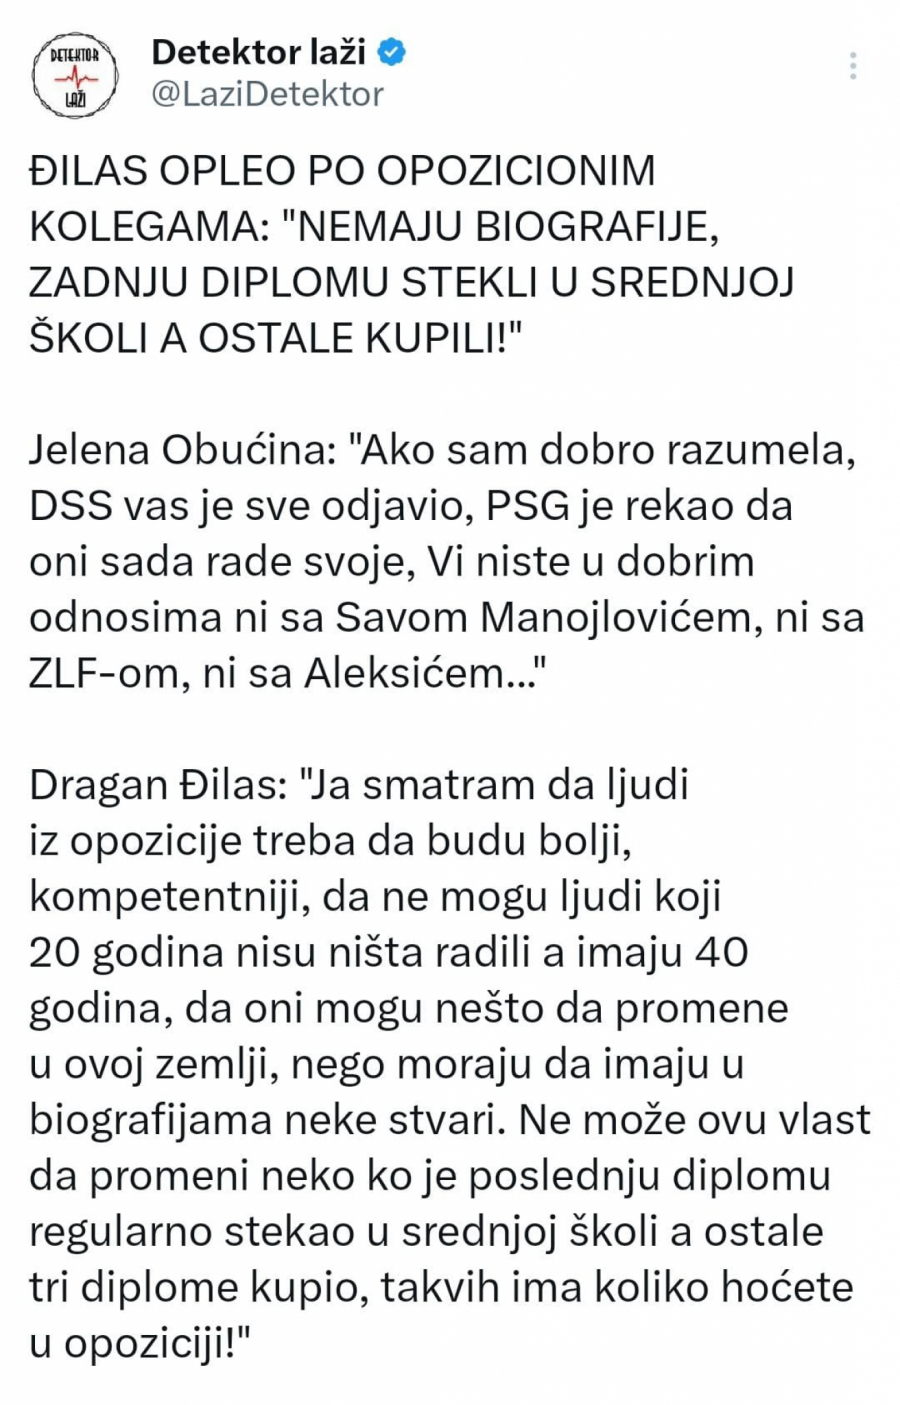 Dragan Đilas